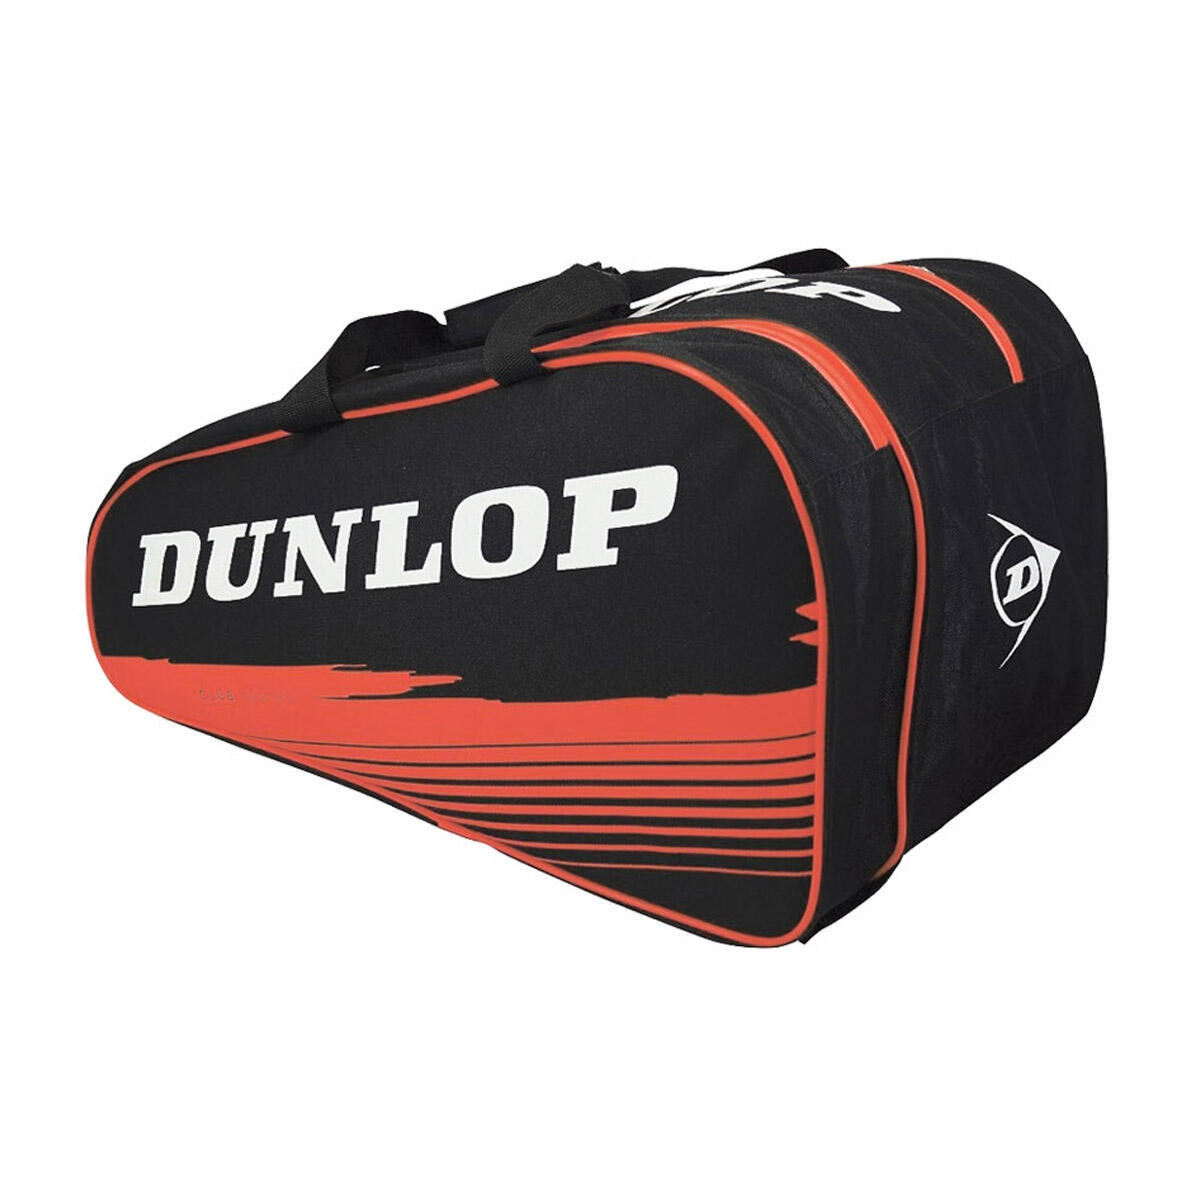 Dunlop Paletero Club Padel Racket Bag - Black/Red 2/2